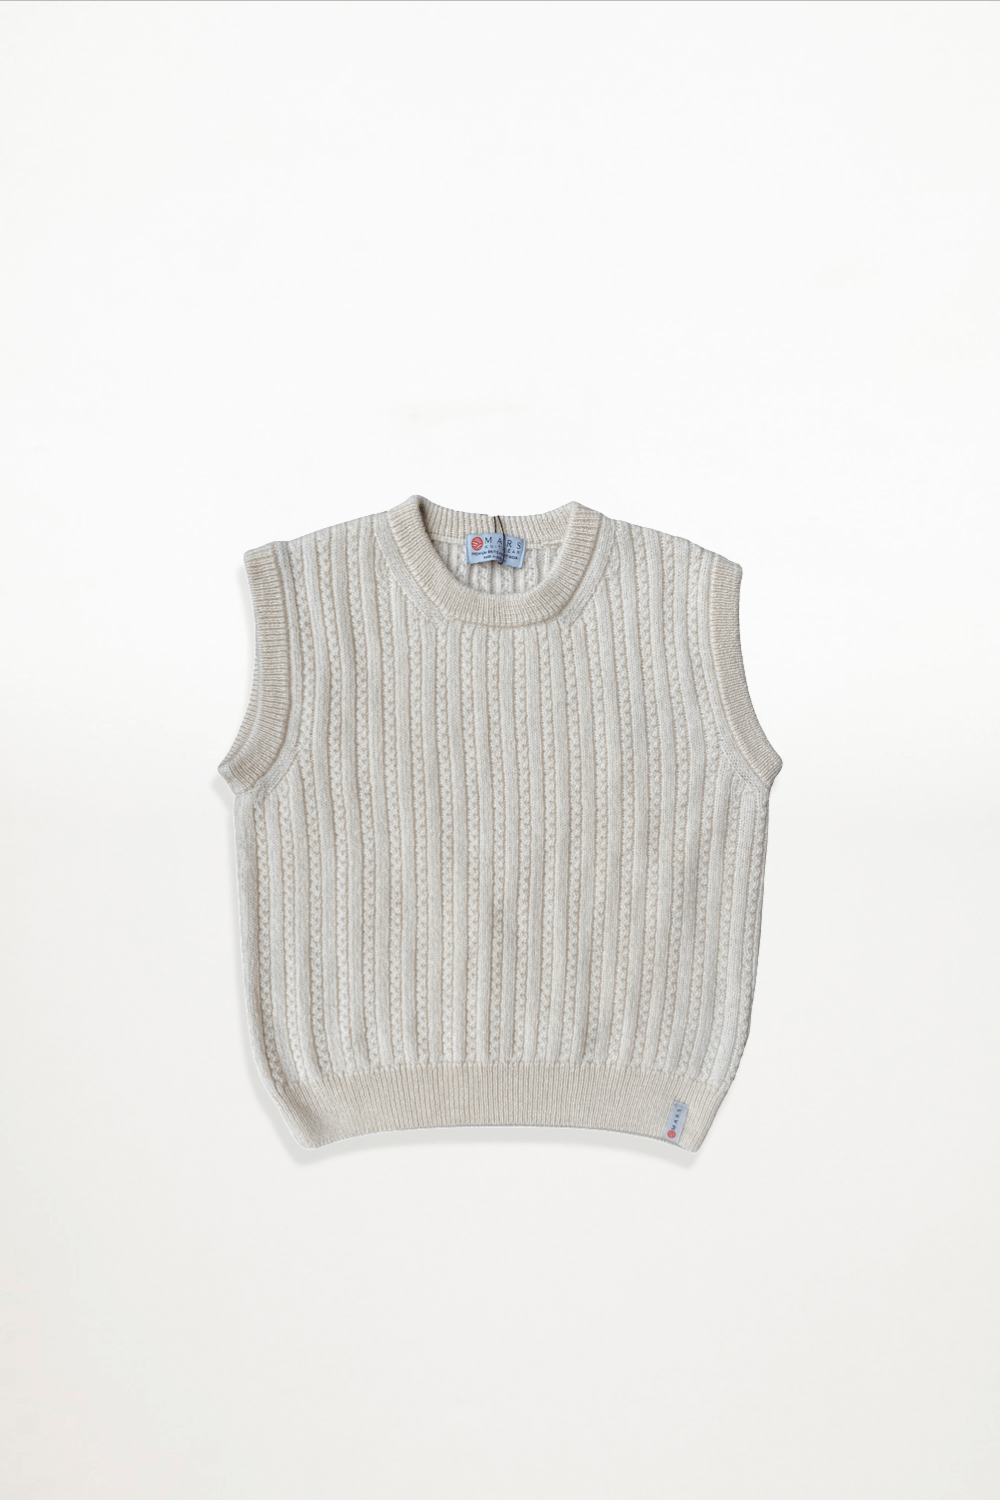 Mars Knitwear - Merino Wool Vest - Blanco - Ensemble Studios